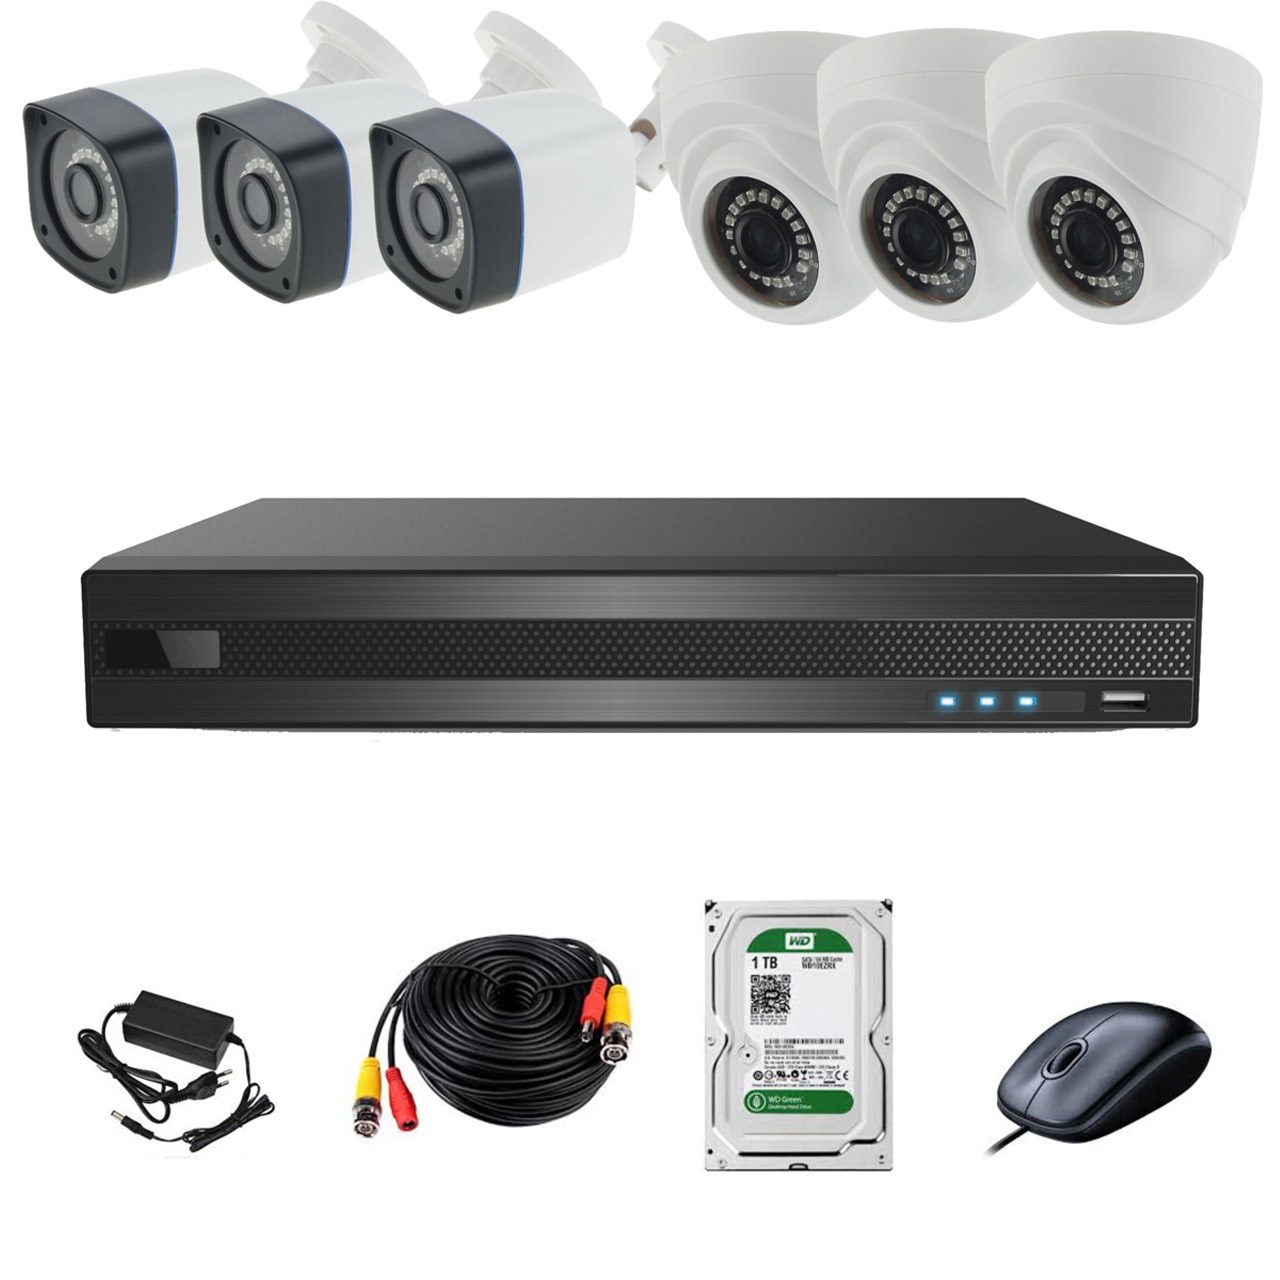 سیستم امنیتی ای اچ دی فوتون کاربری مسکونی فروشگاهی 6 دوربین